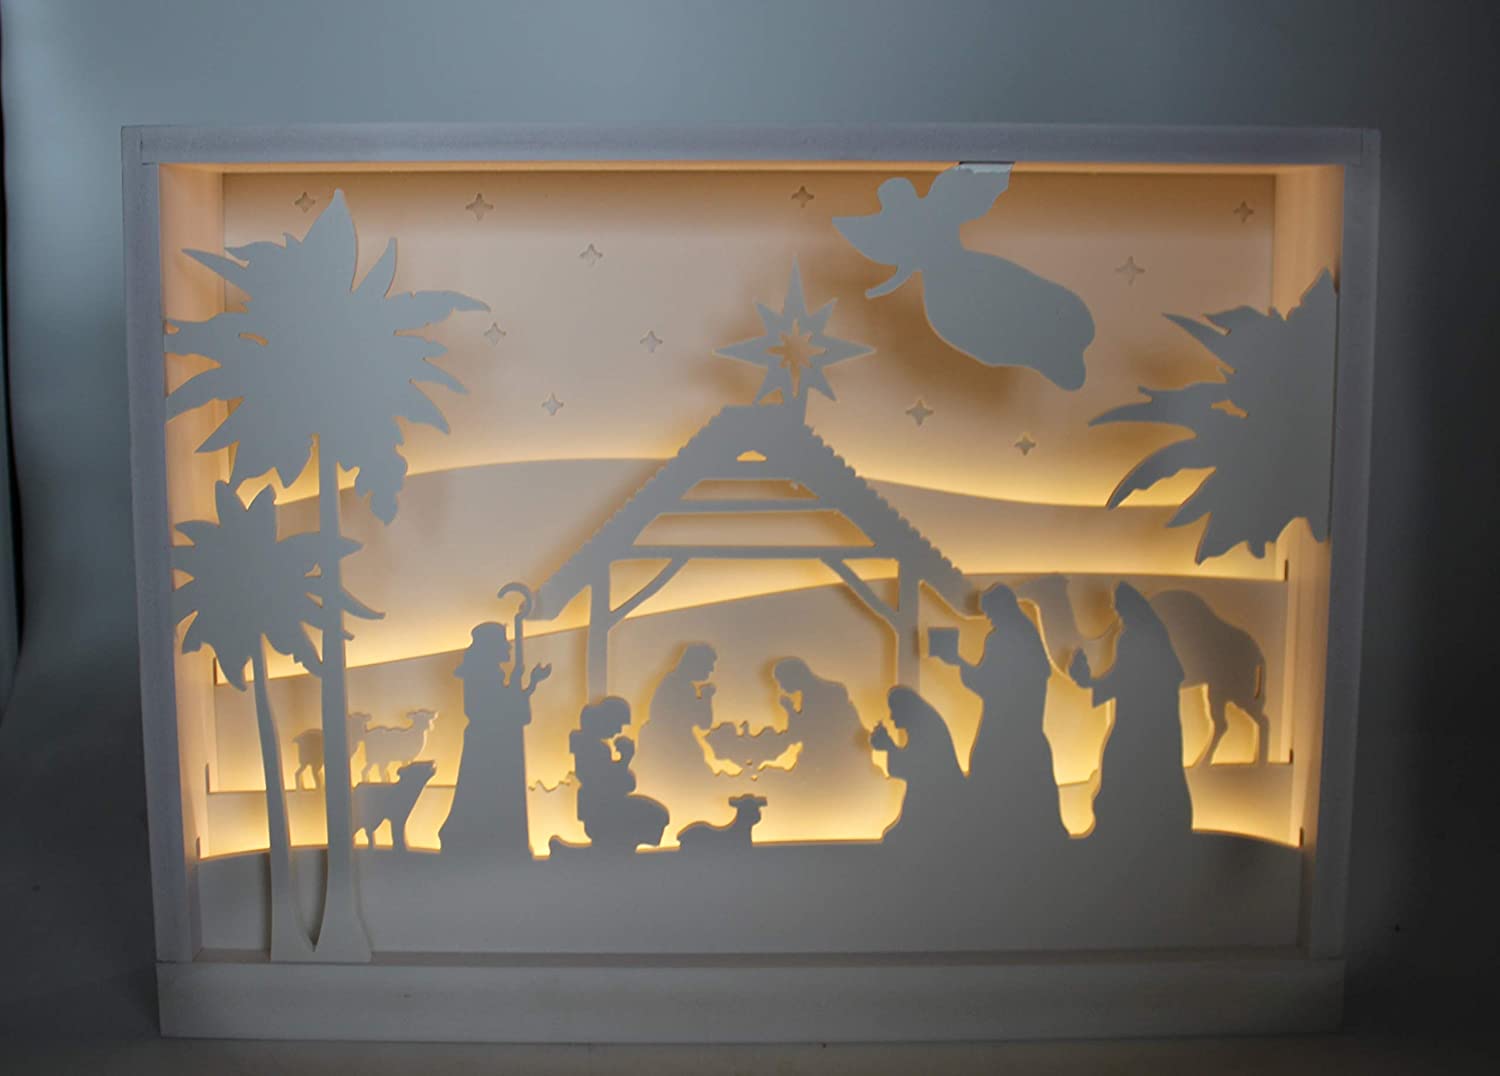 DARO DEKO 3D Nativity Scene in Frame with LED 40 x 30 cm White